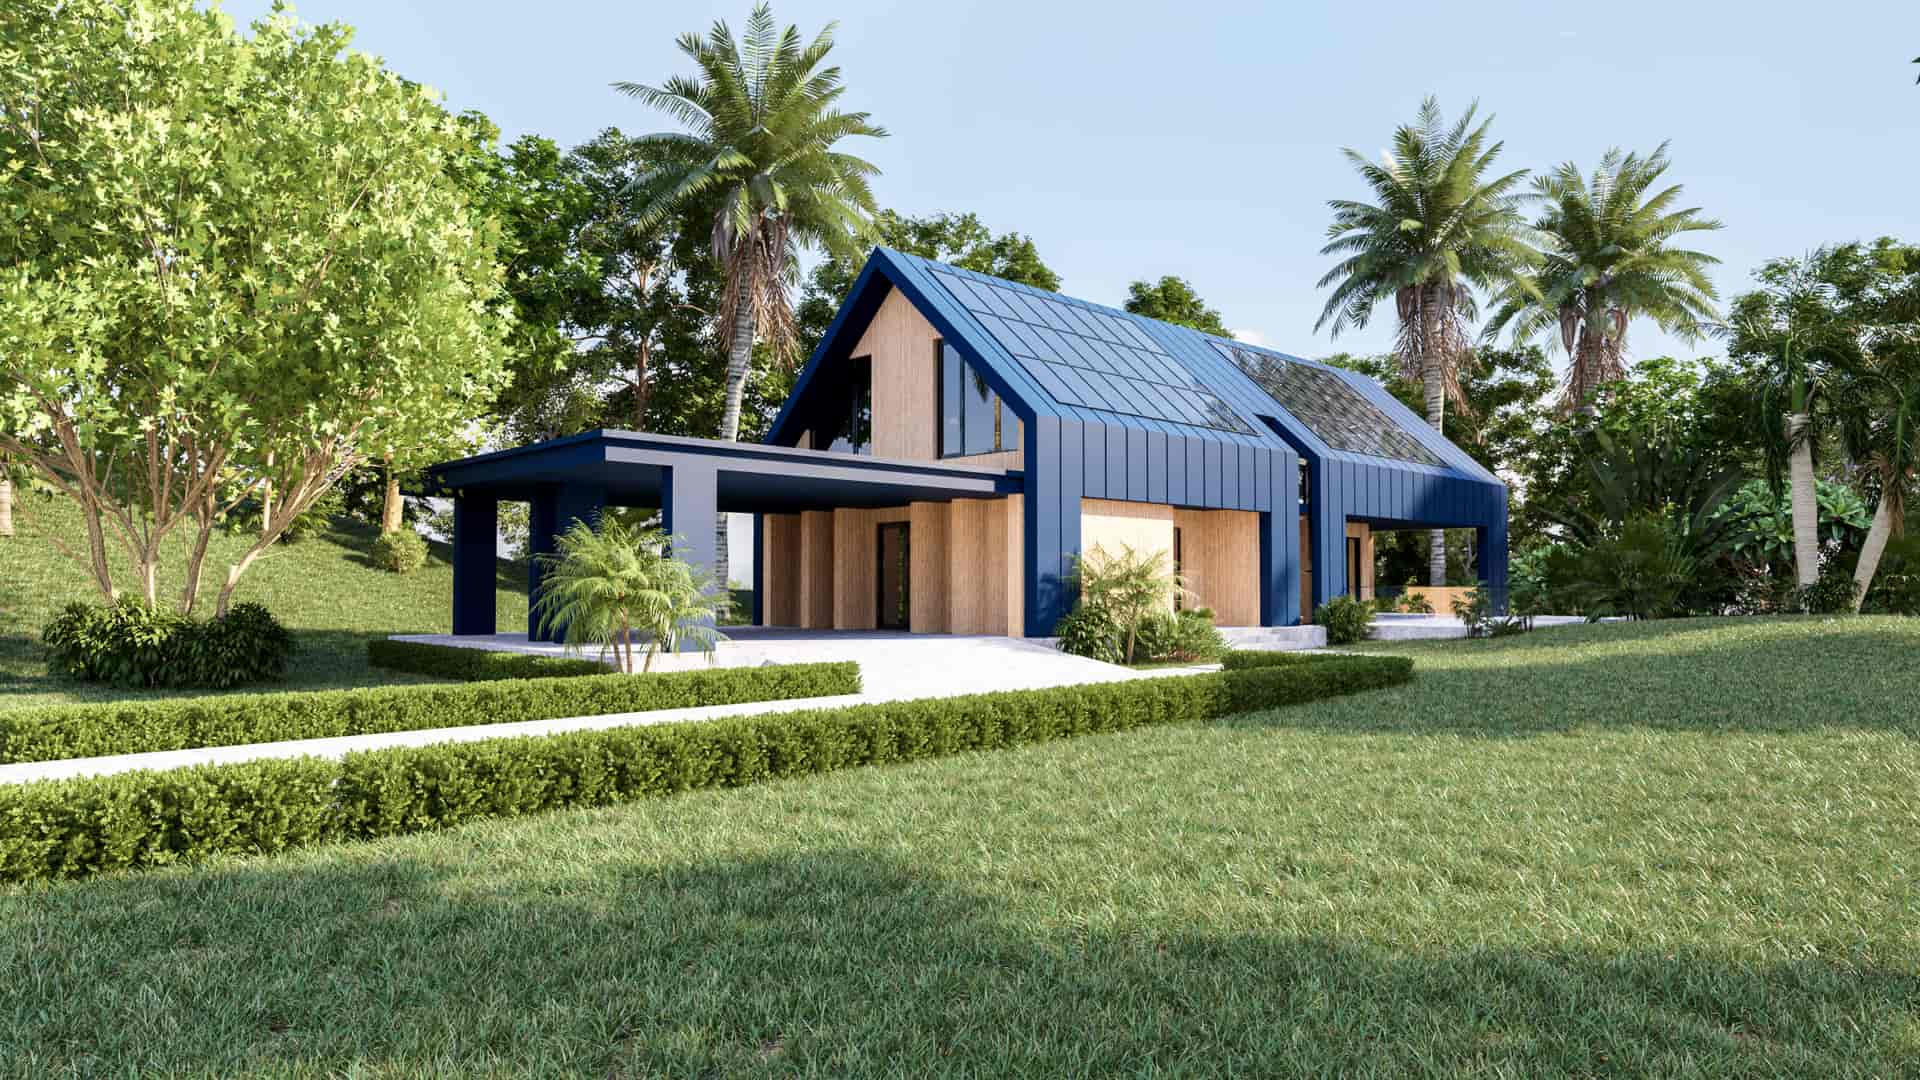 Casa moderna con placas fotovoltaicas en el tejado, uno de los tipos de energía solar renovable